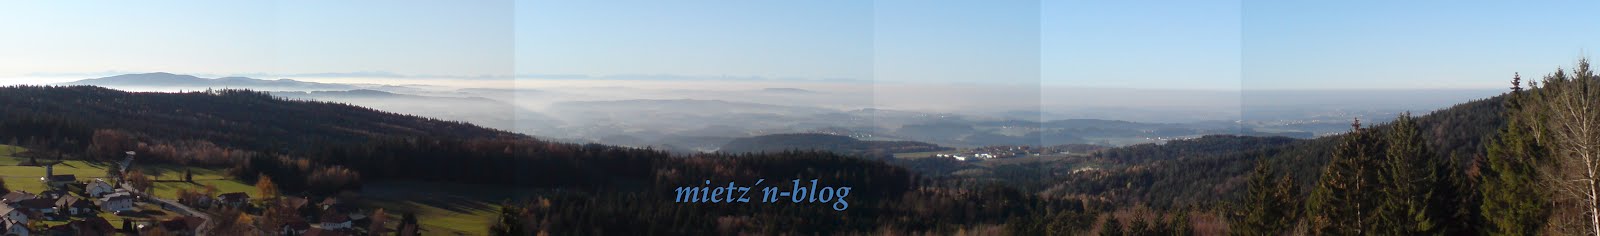 mietzn-blog